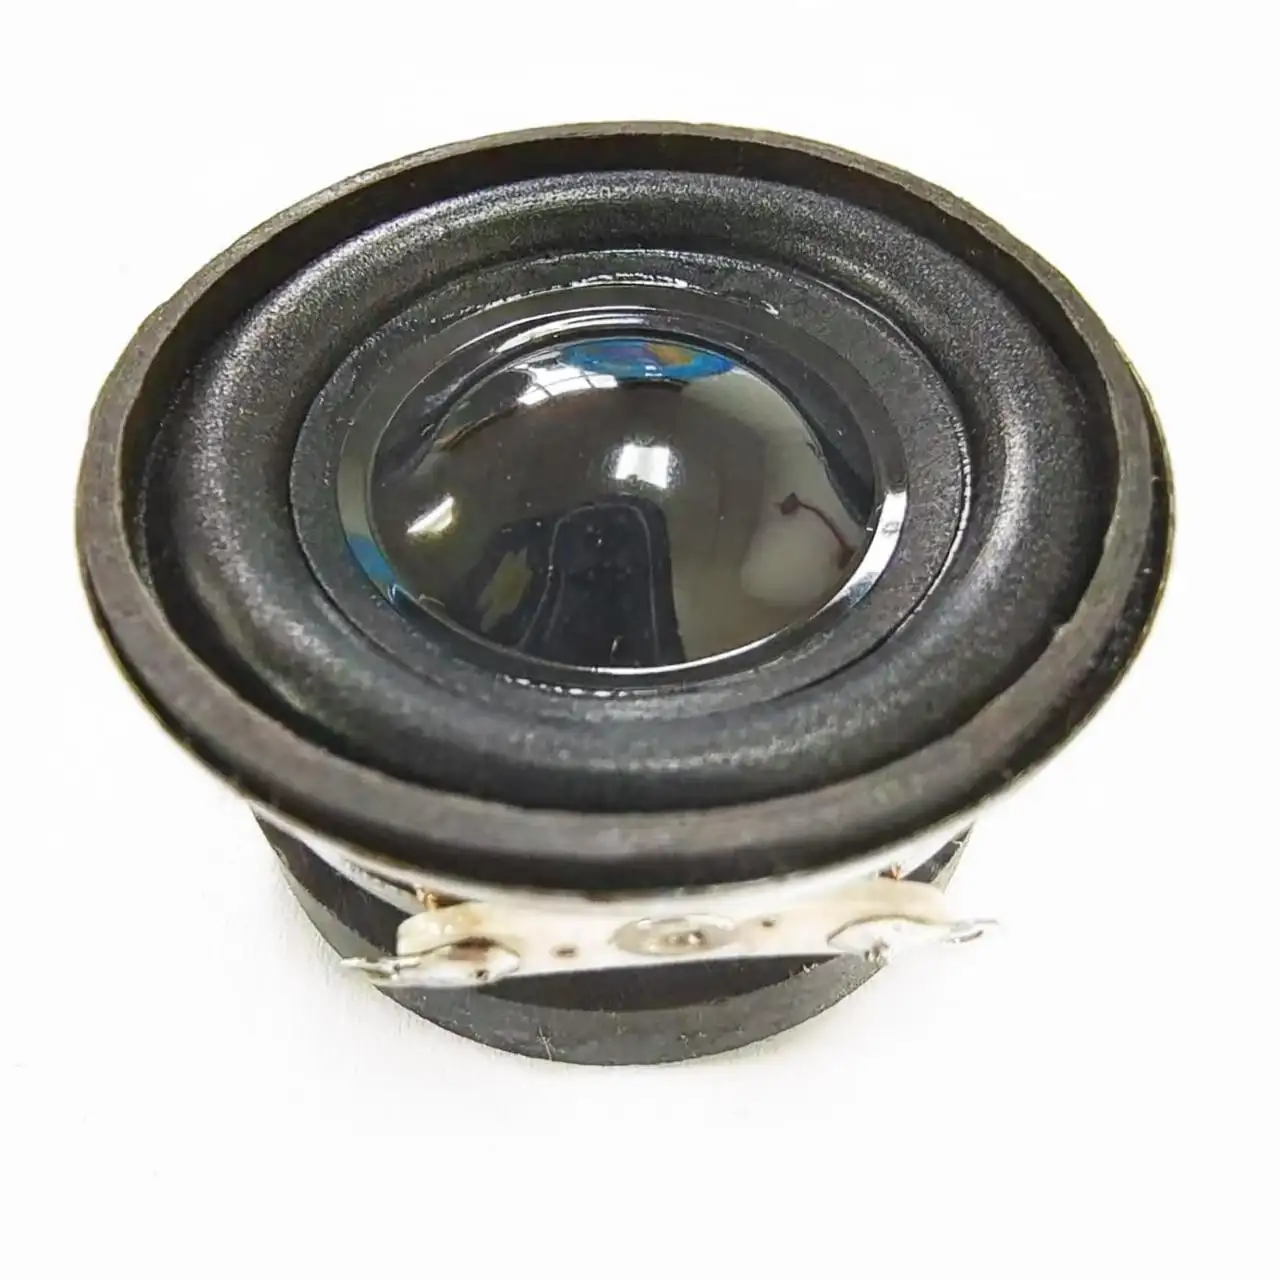 Speaker Multimedia eksternal 40mm tepi gelembung magnetik, aksesori Speaker Multimedia 1.5 inci 4 Speaker ohm 3W